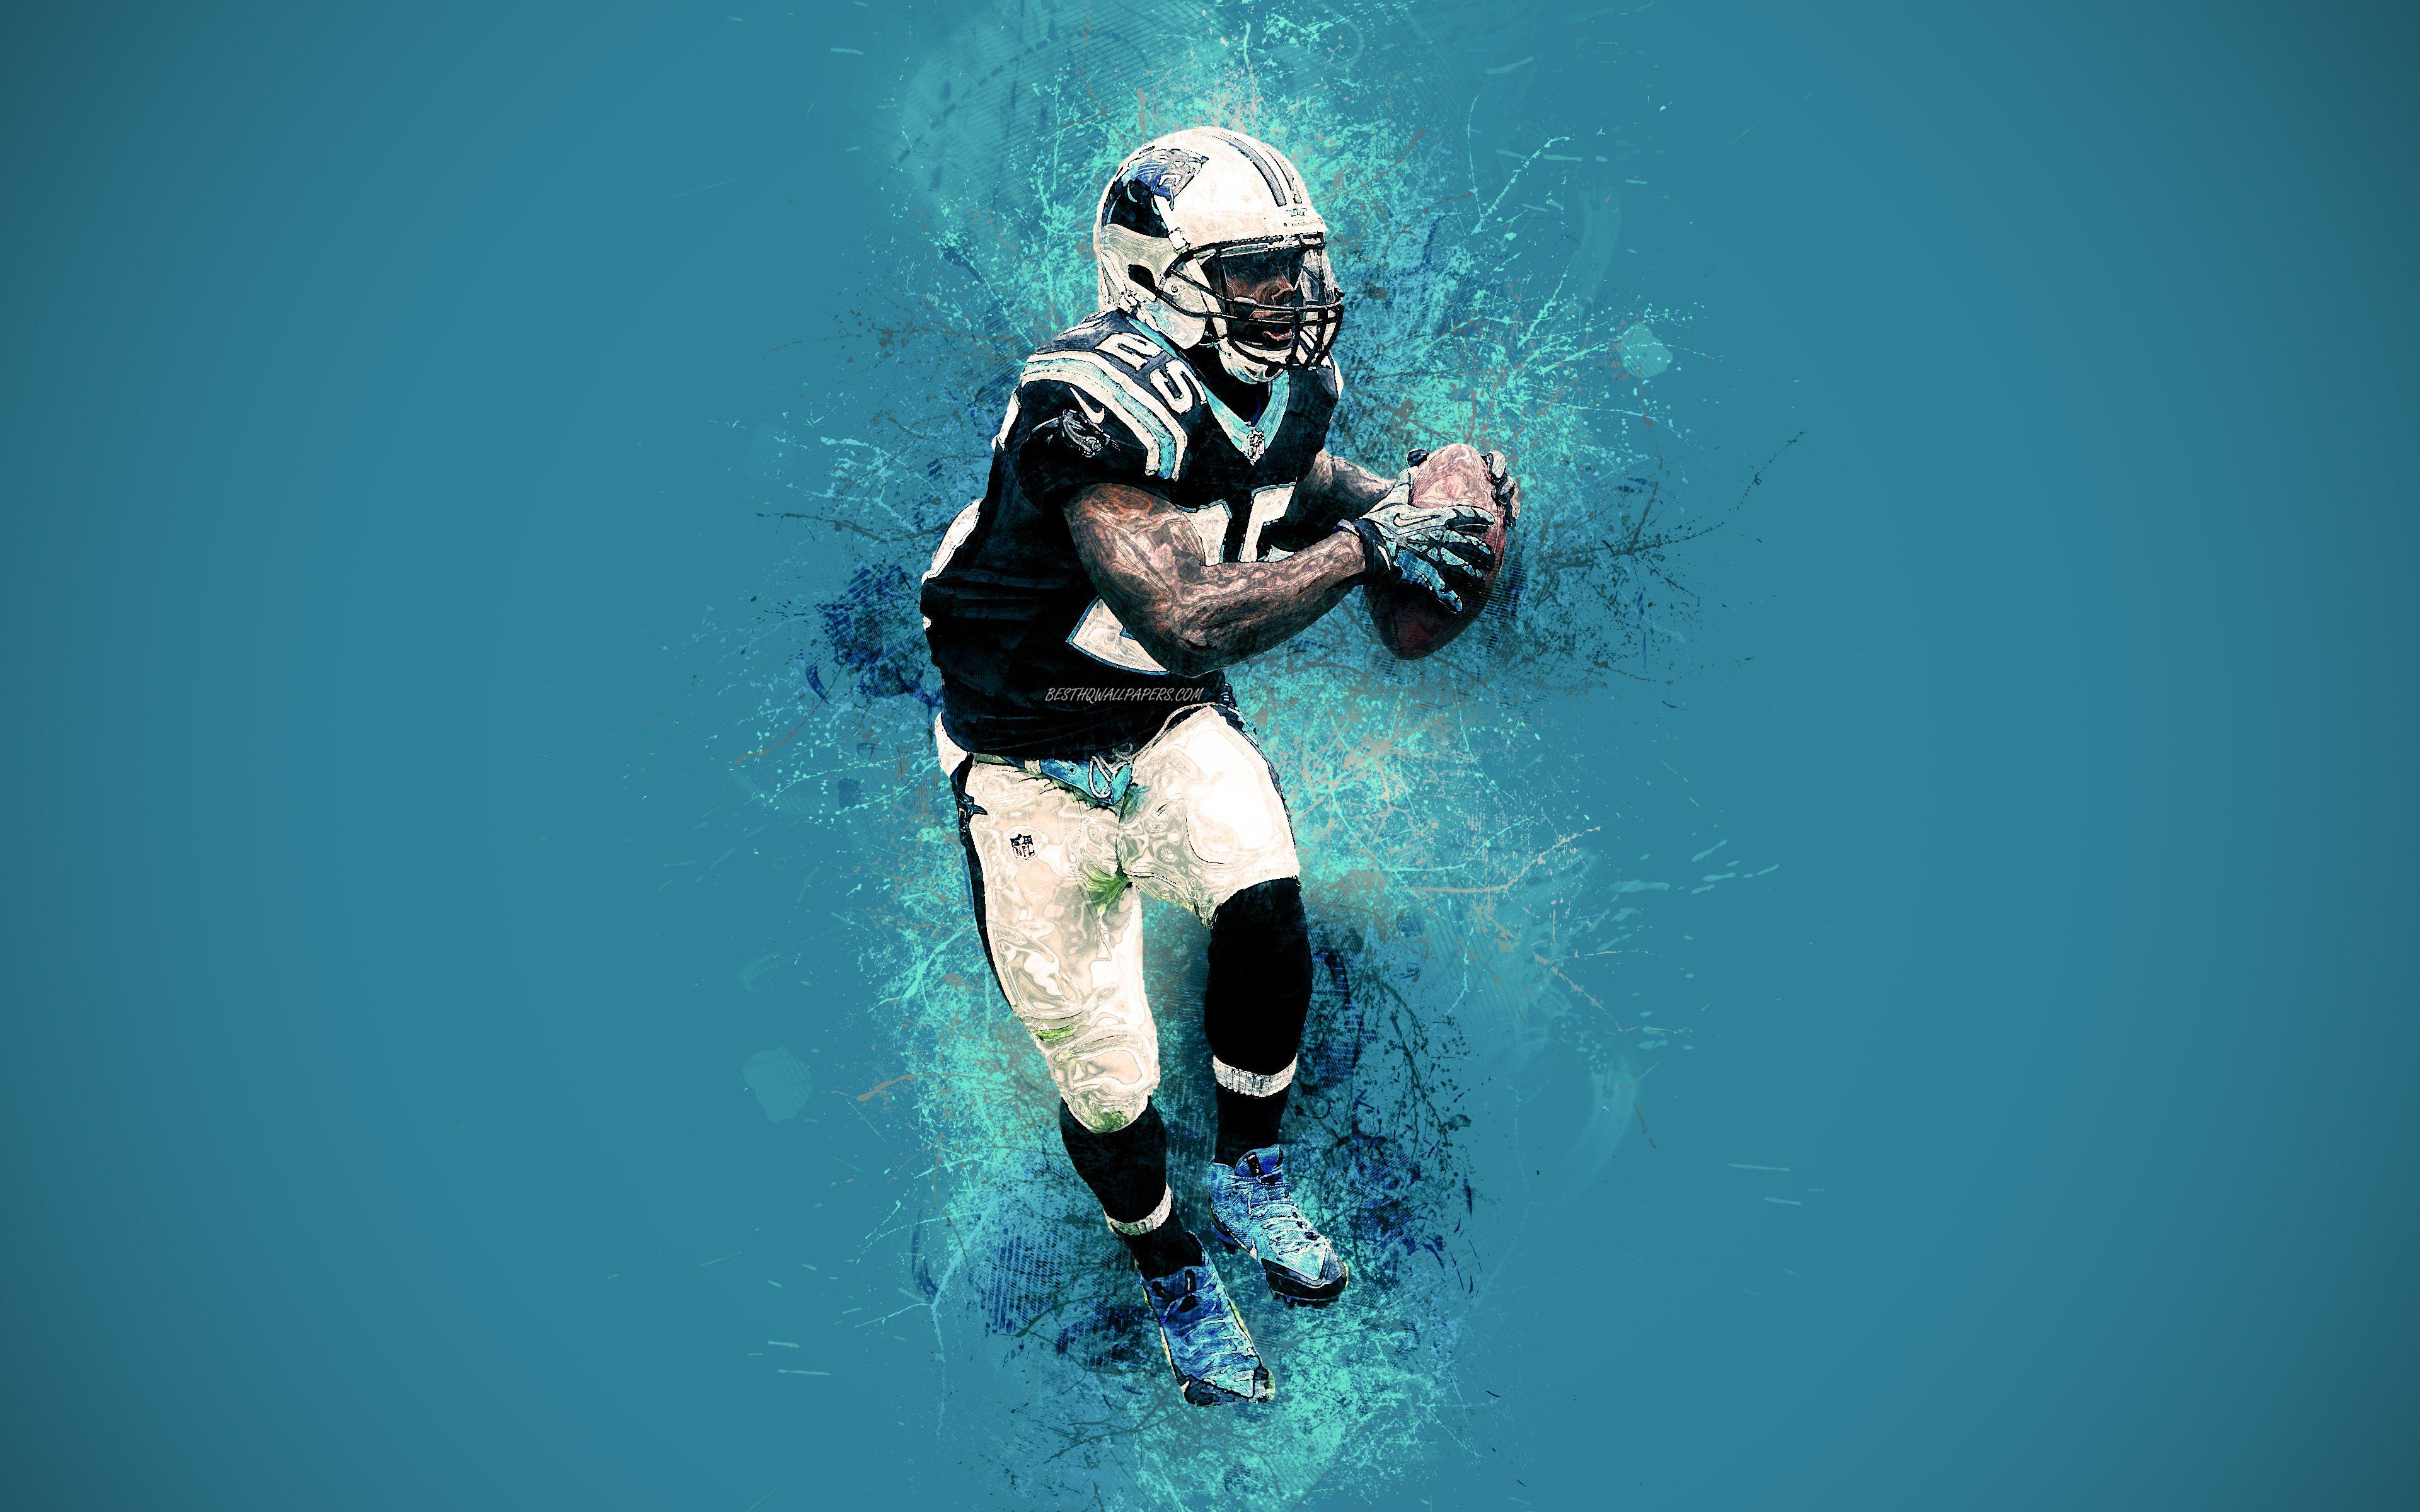 Download wallpaper Kenjon Barner, Carolina Panthers, NFL, running